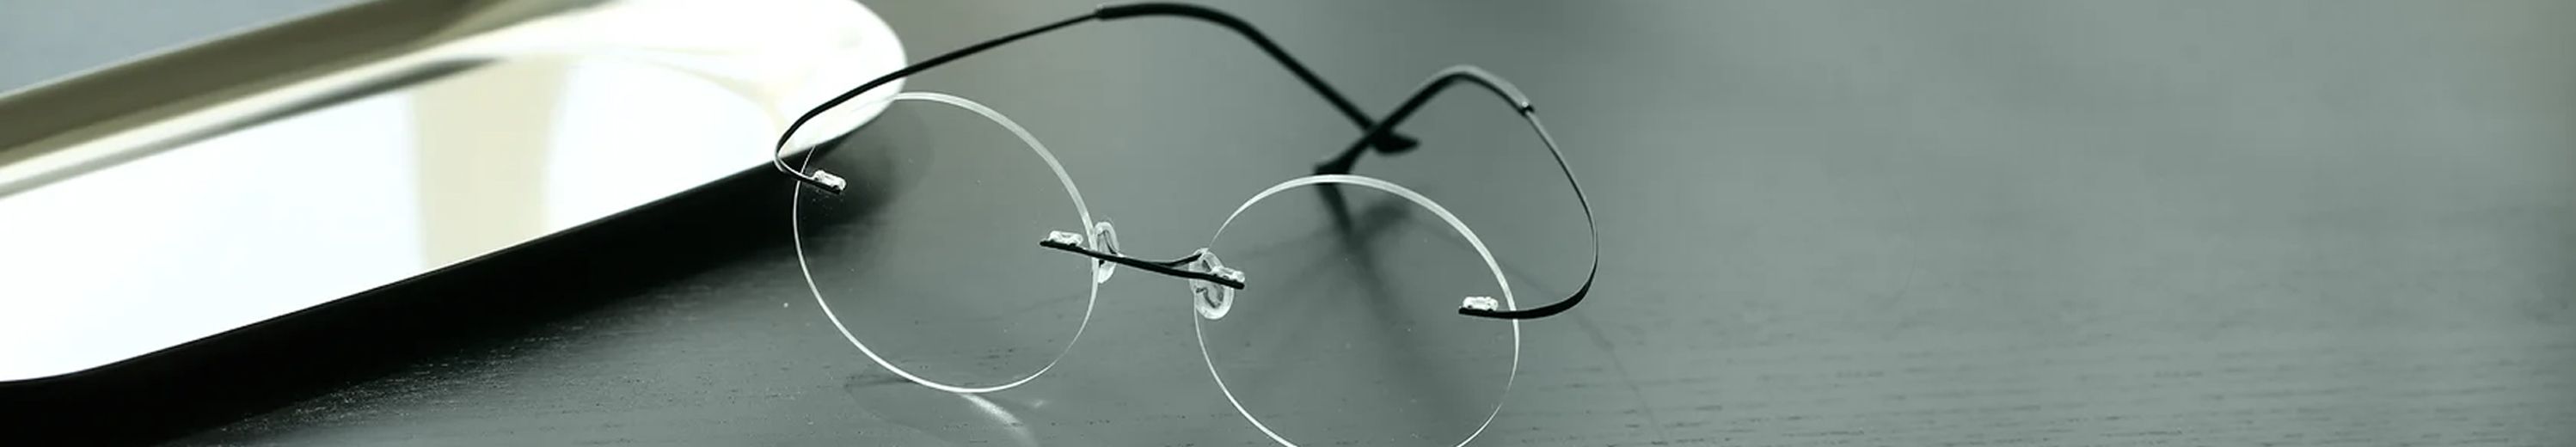 Flexible Metal Eyeglasses Frame for Men & Women